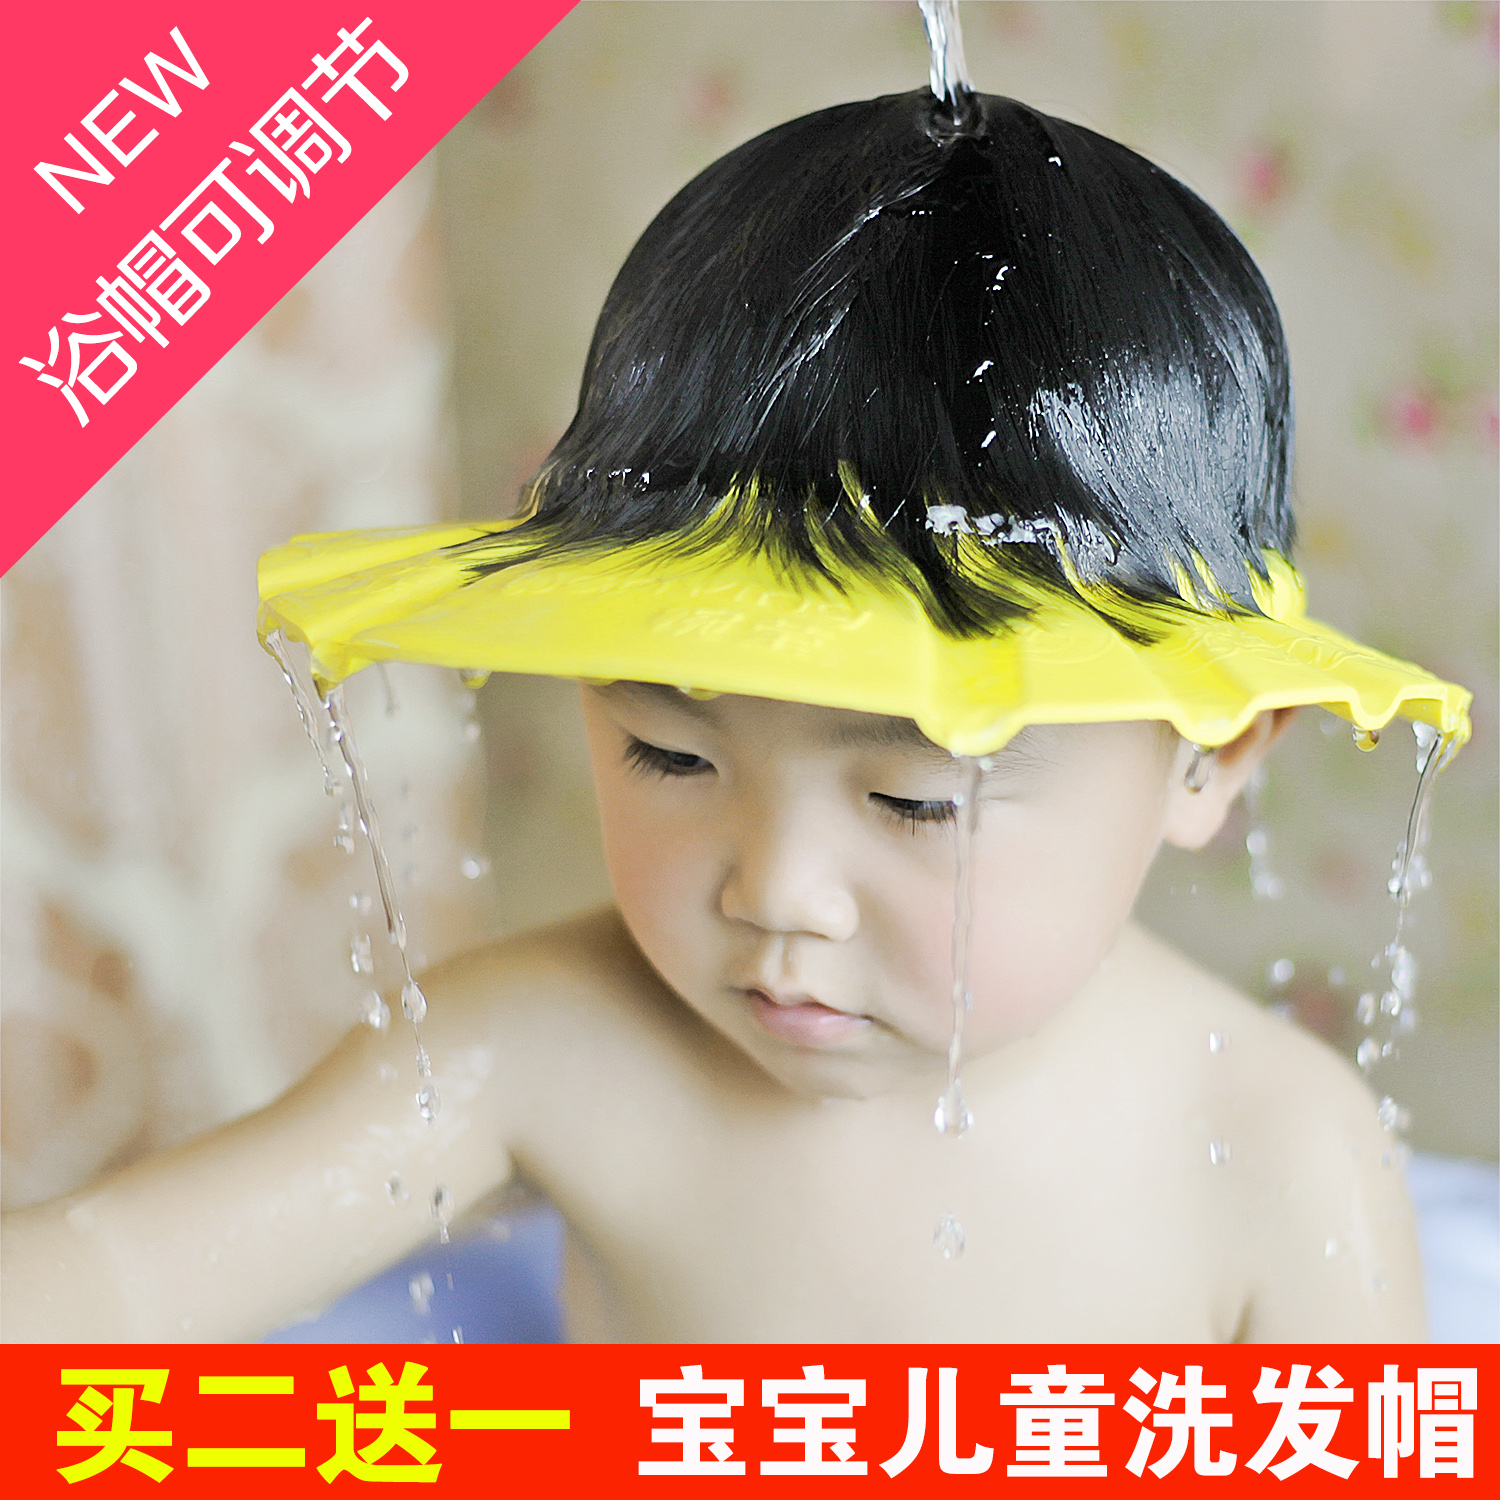 小孩婴儿宝宝洗头帽可调节防水儿童浴帽护耳护帽洗澡帽洗发帽包邮